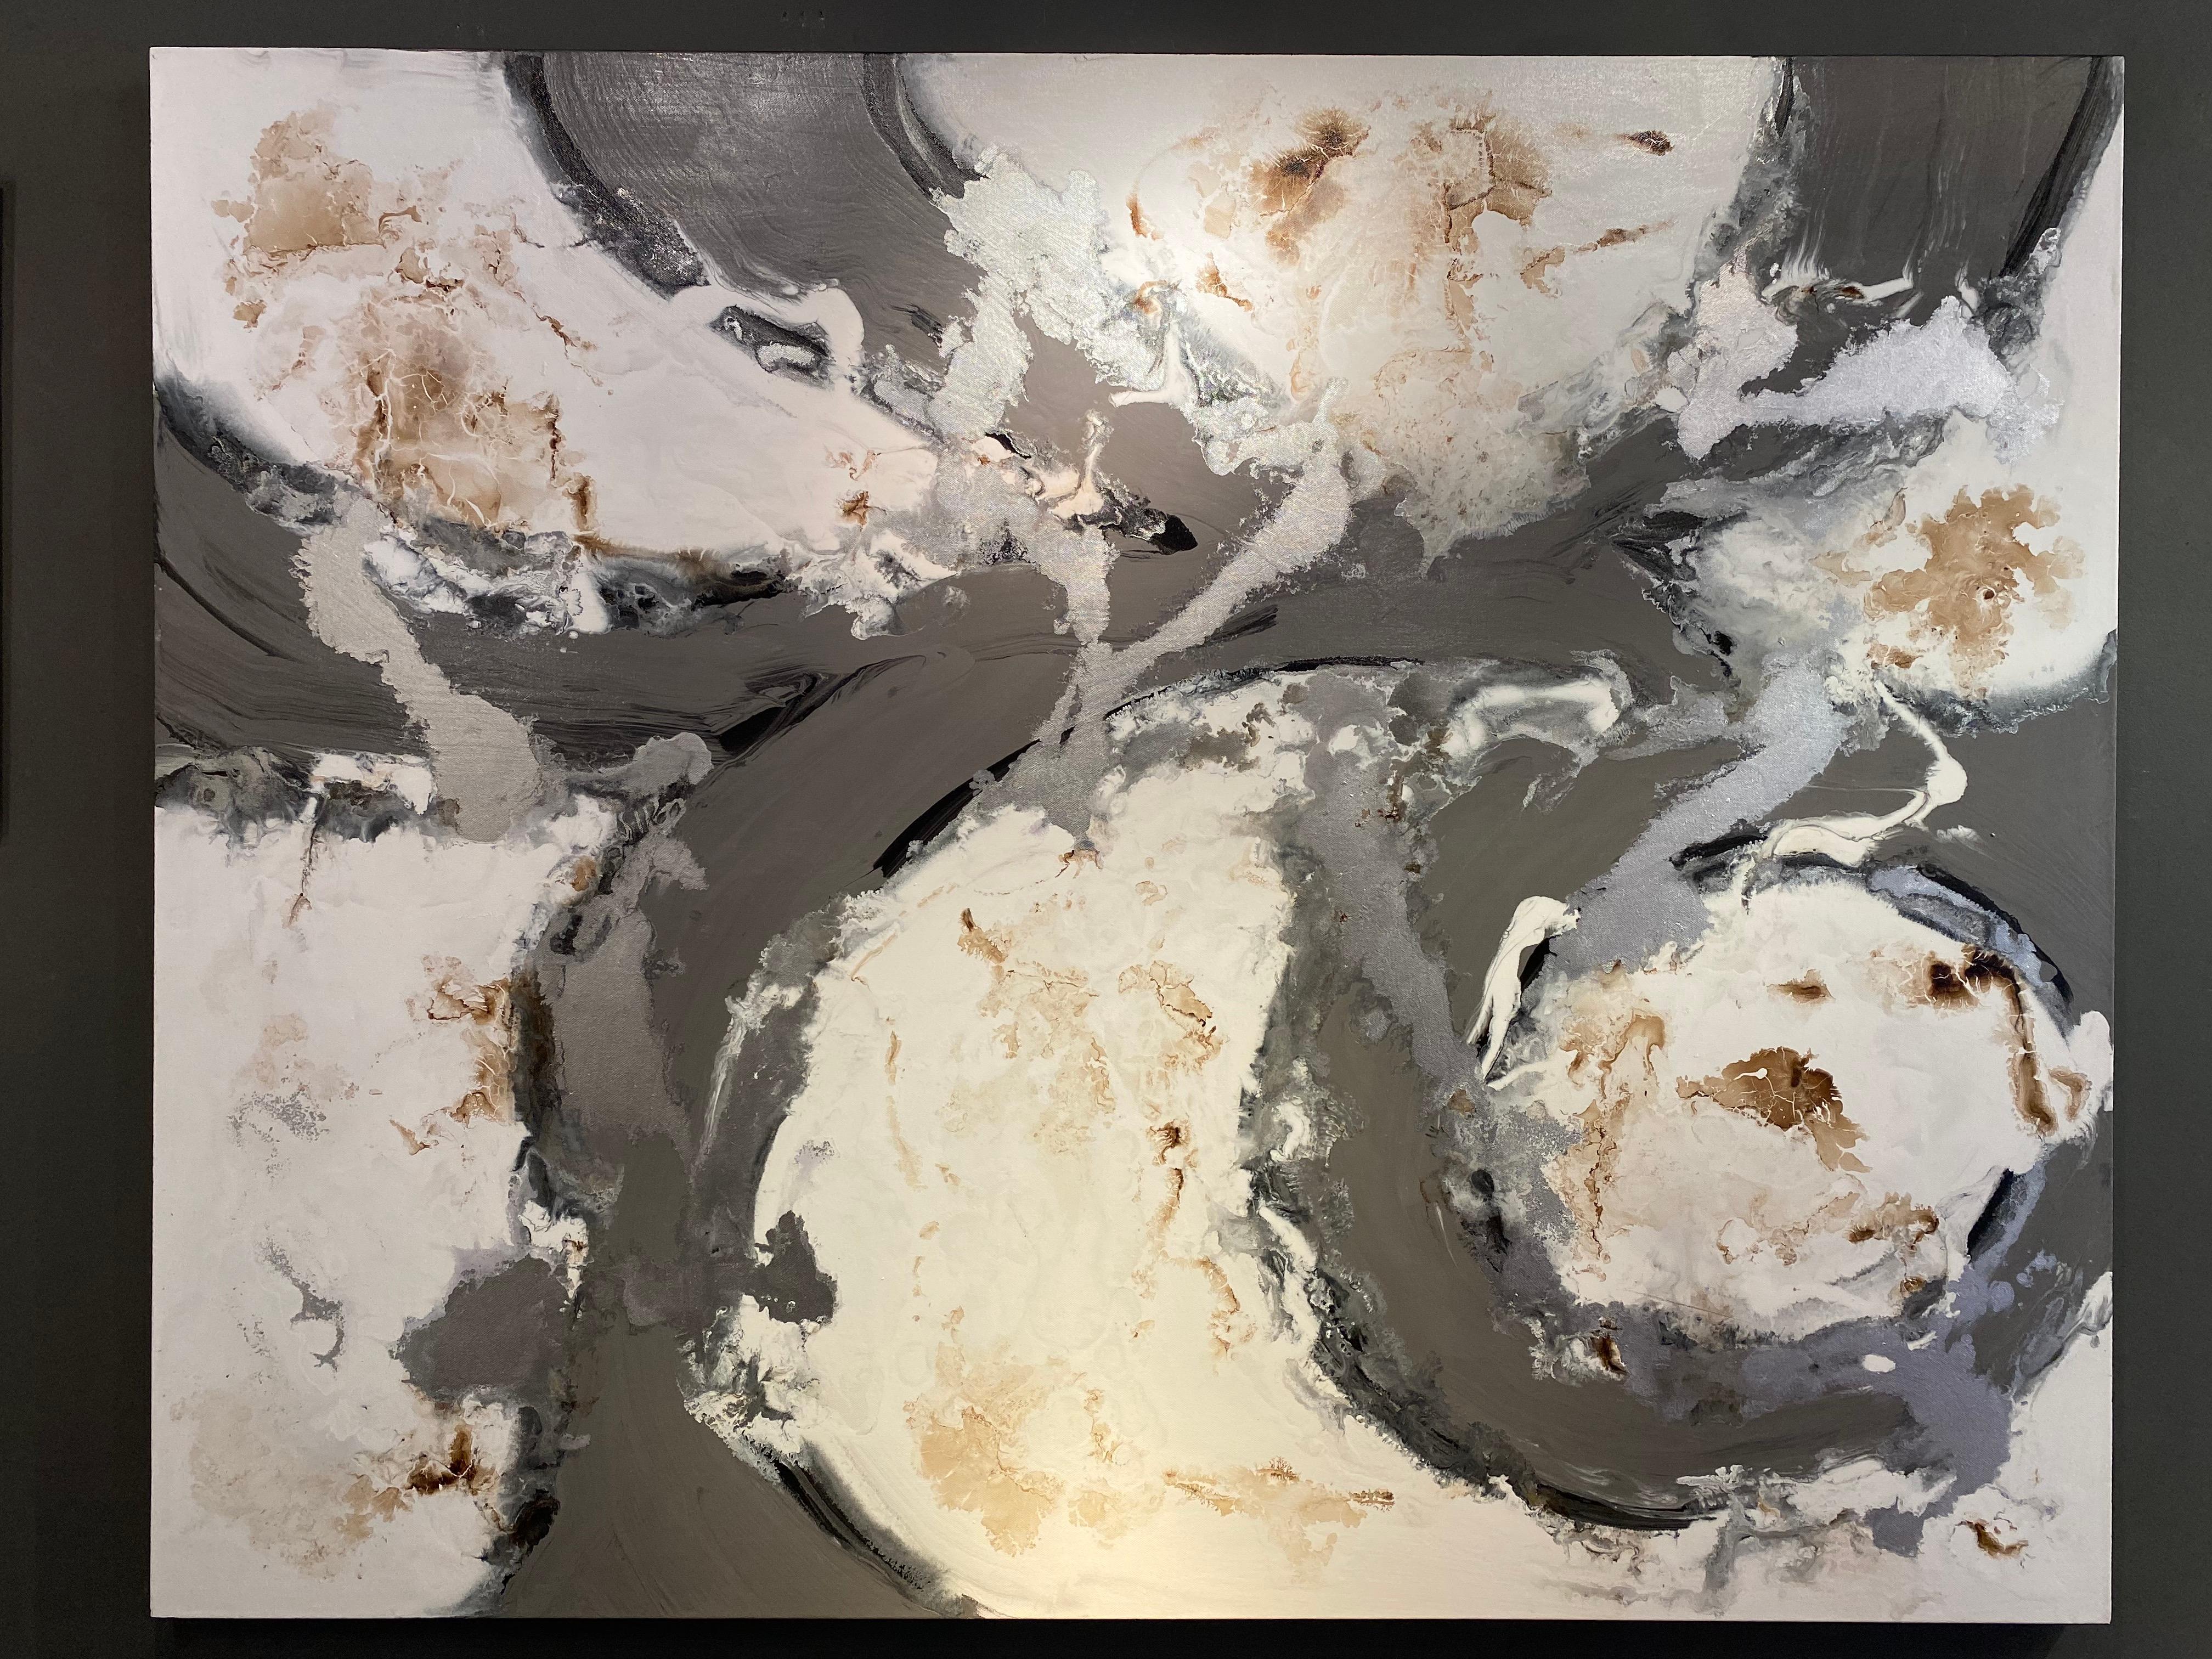 Silver Shadows" Zeitgenössische abstrakte Malerei Silber-, Weiß- und Goldwirbel